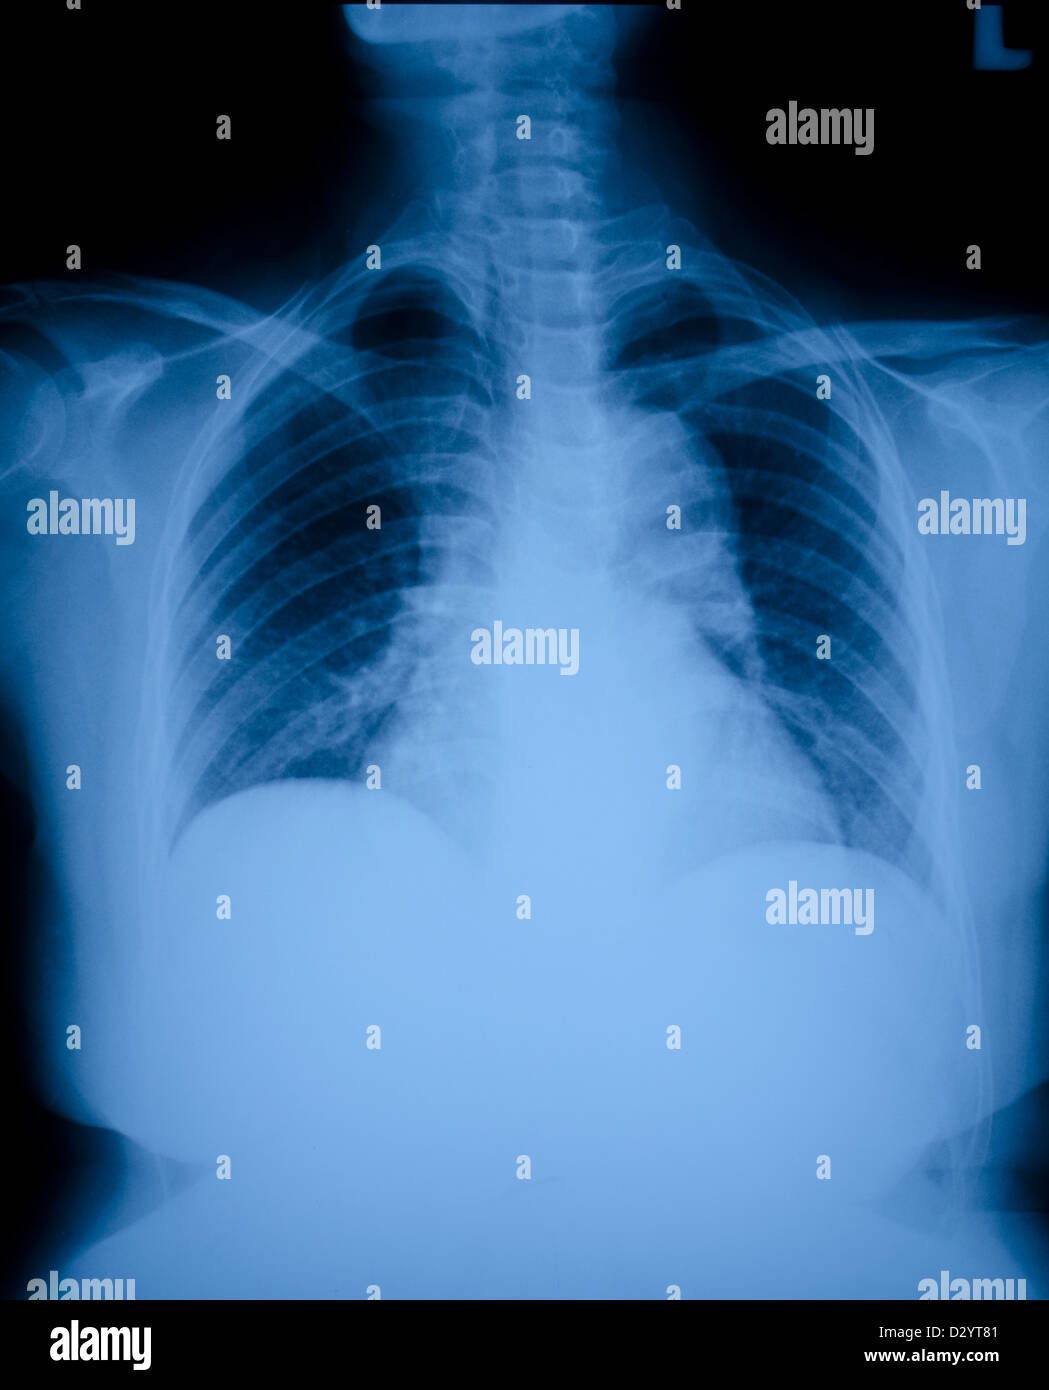 Pneumonia patients x-ray film. Stock Photo